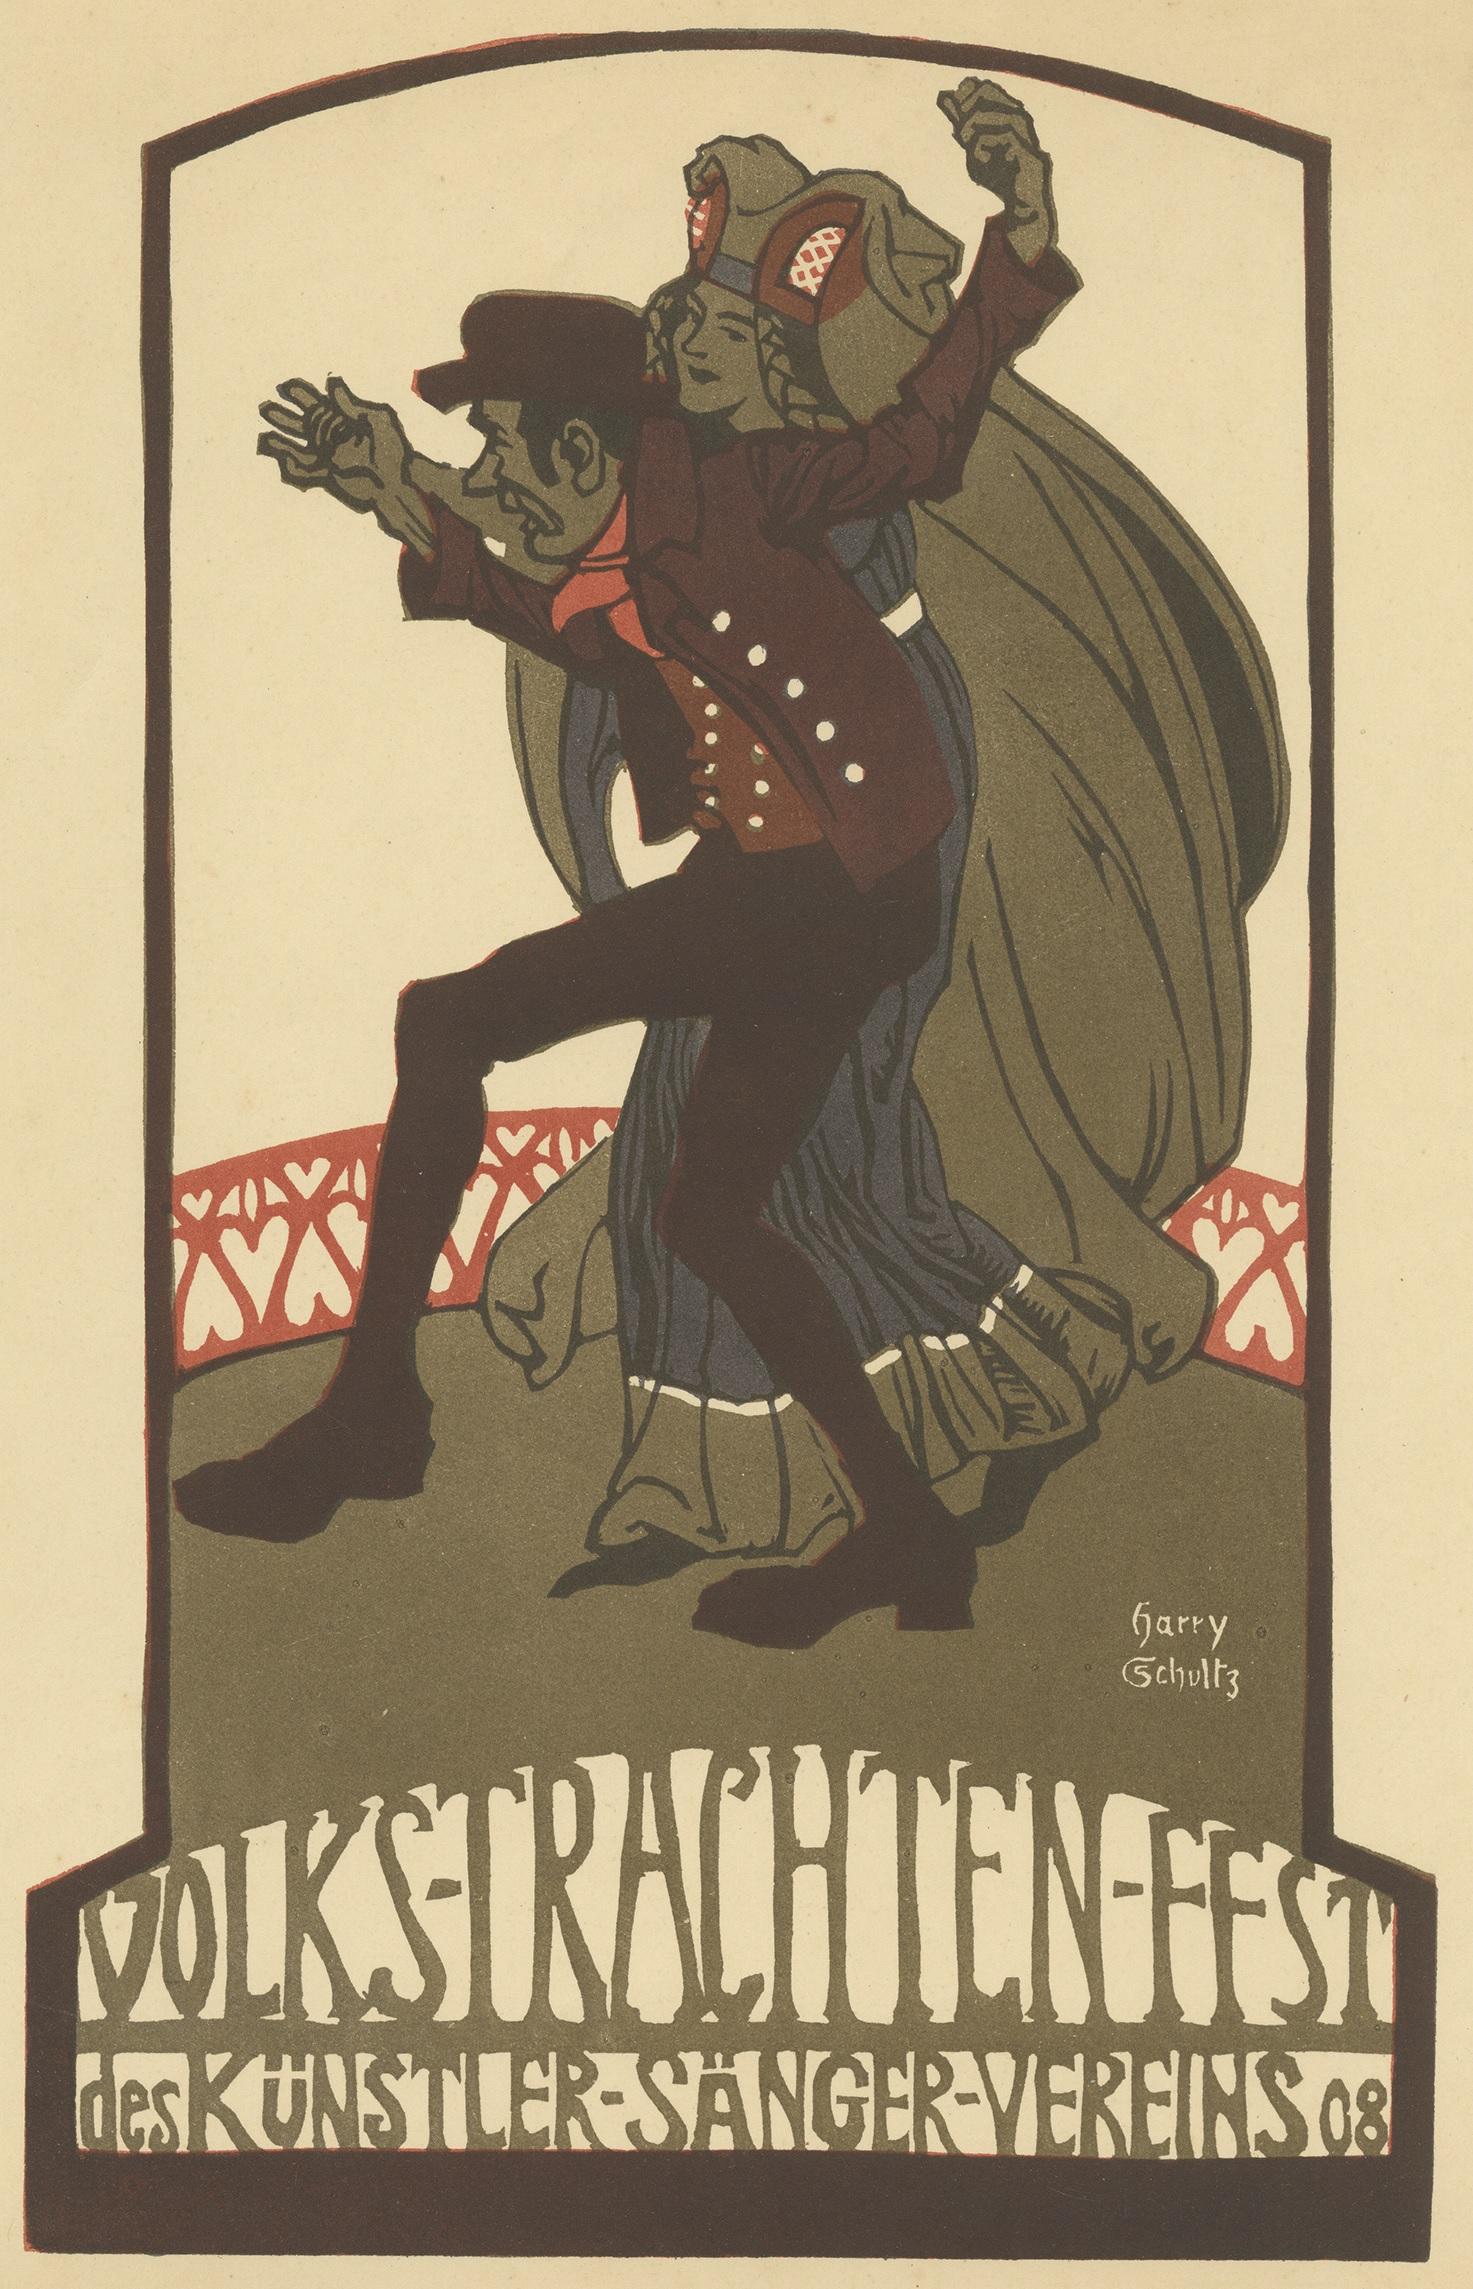 Antique print titled 'Volks-Trachten-Fest des Künstler-Sänger-Vereins 08'. Decorative poster by Harry Schultz.